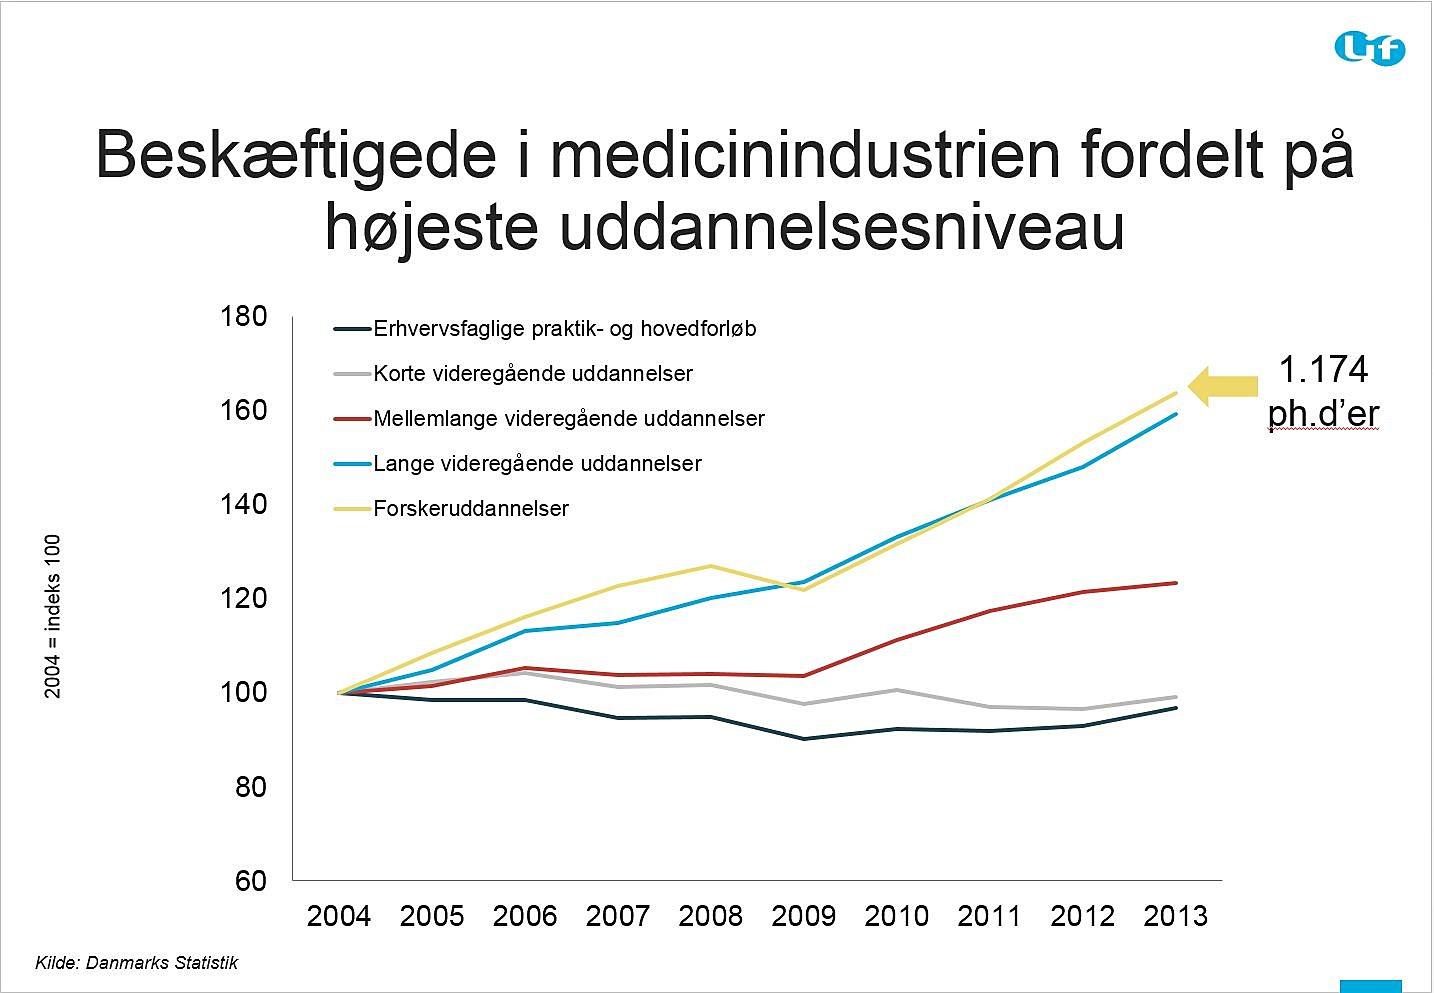 Behovet for akademikere vokser markant i lægemiddelvirksomhederne. Kilde: Lif/Danmarks Statistik.